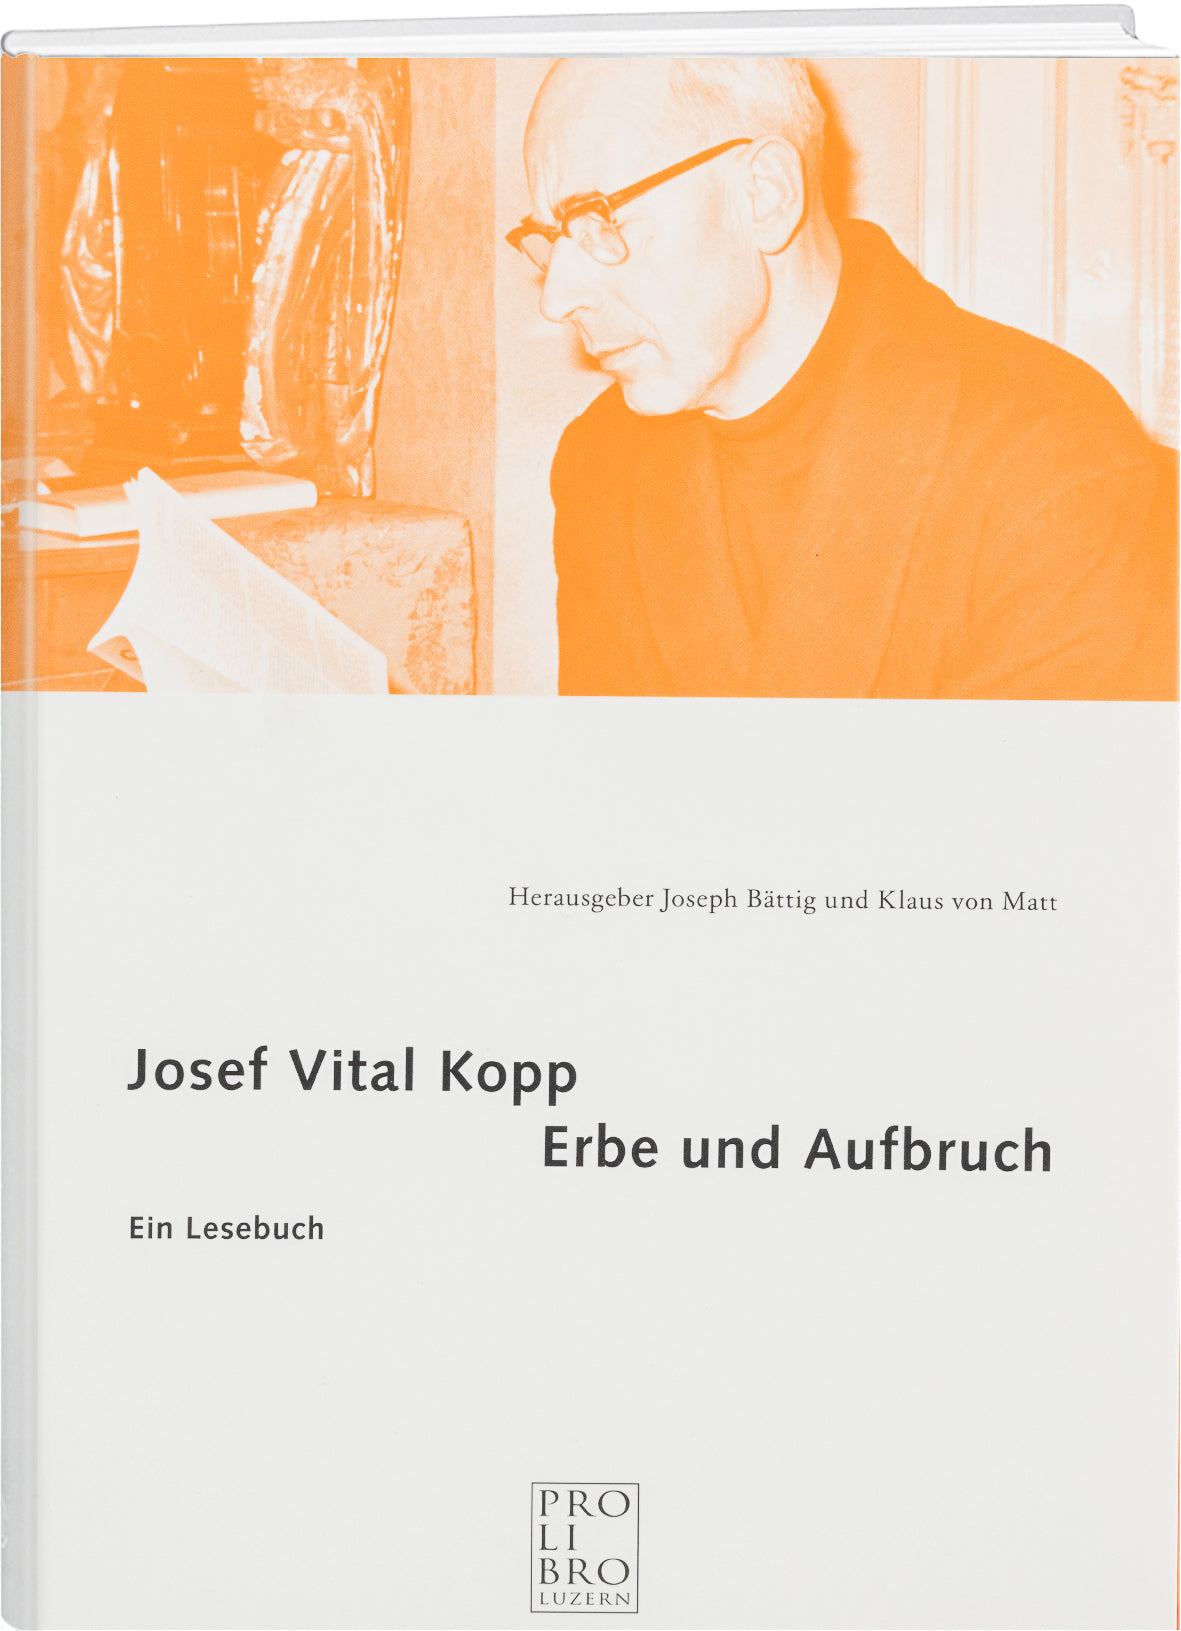 Div: Josef Vital Kopp – Erbe und Aufbruch - WEBER VERLAG